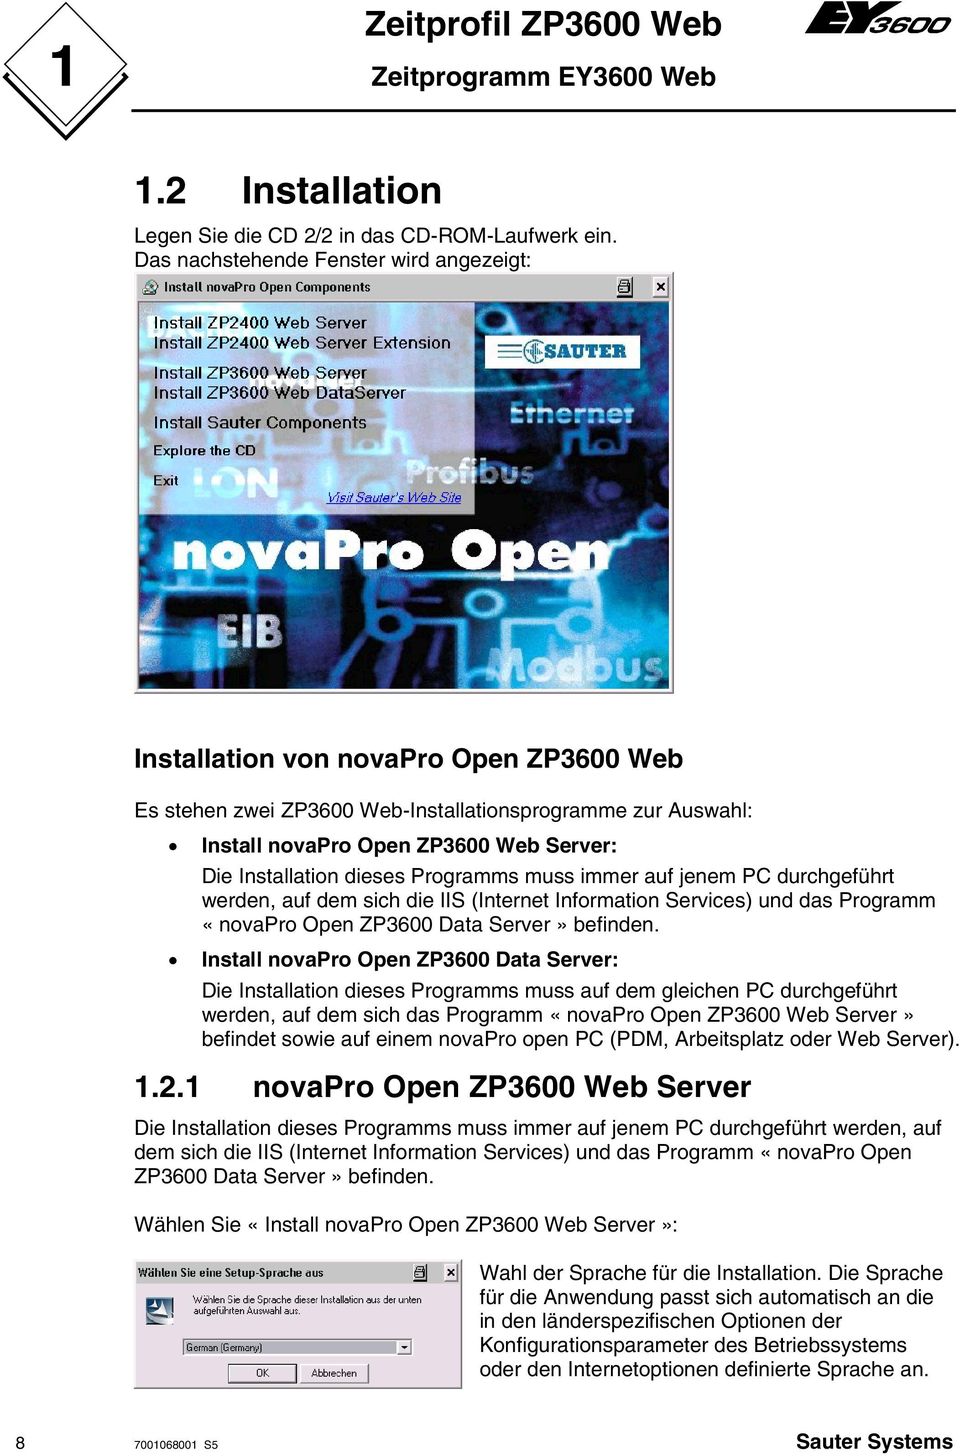 Installation dieses Programms muss immer auf jenem PC durchgeführt werden, auf dem sich die IIS (Internet Information Services) und das Programm «novapro Open ZP3600 Data Server» befinden.